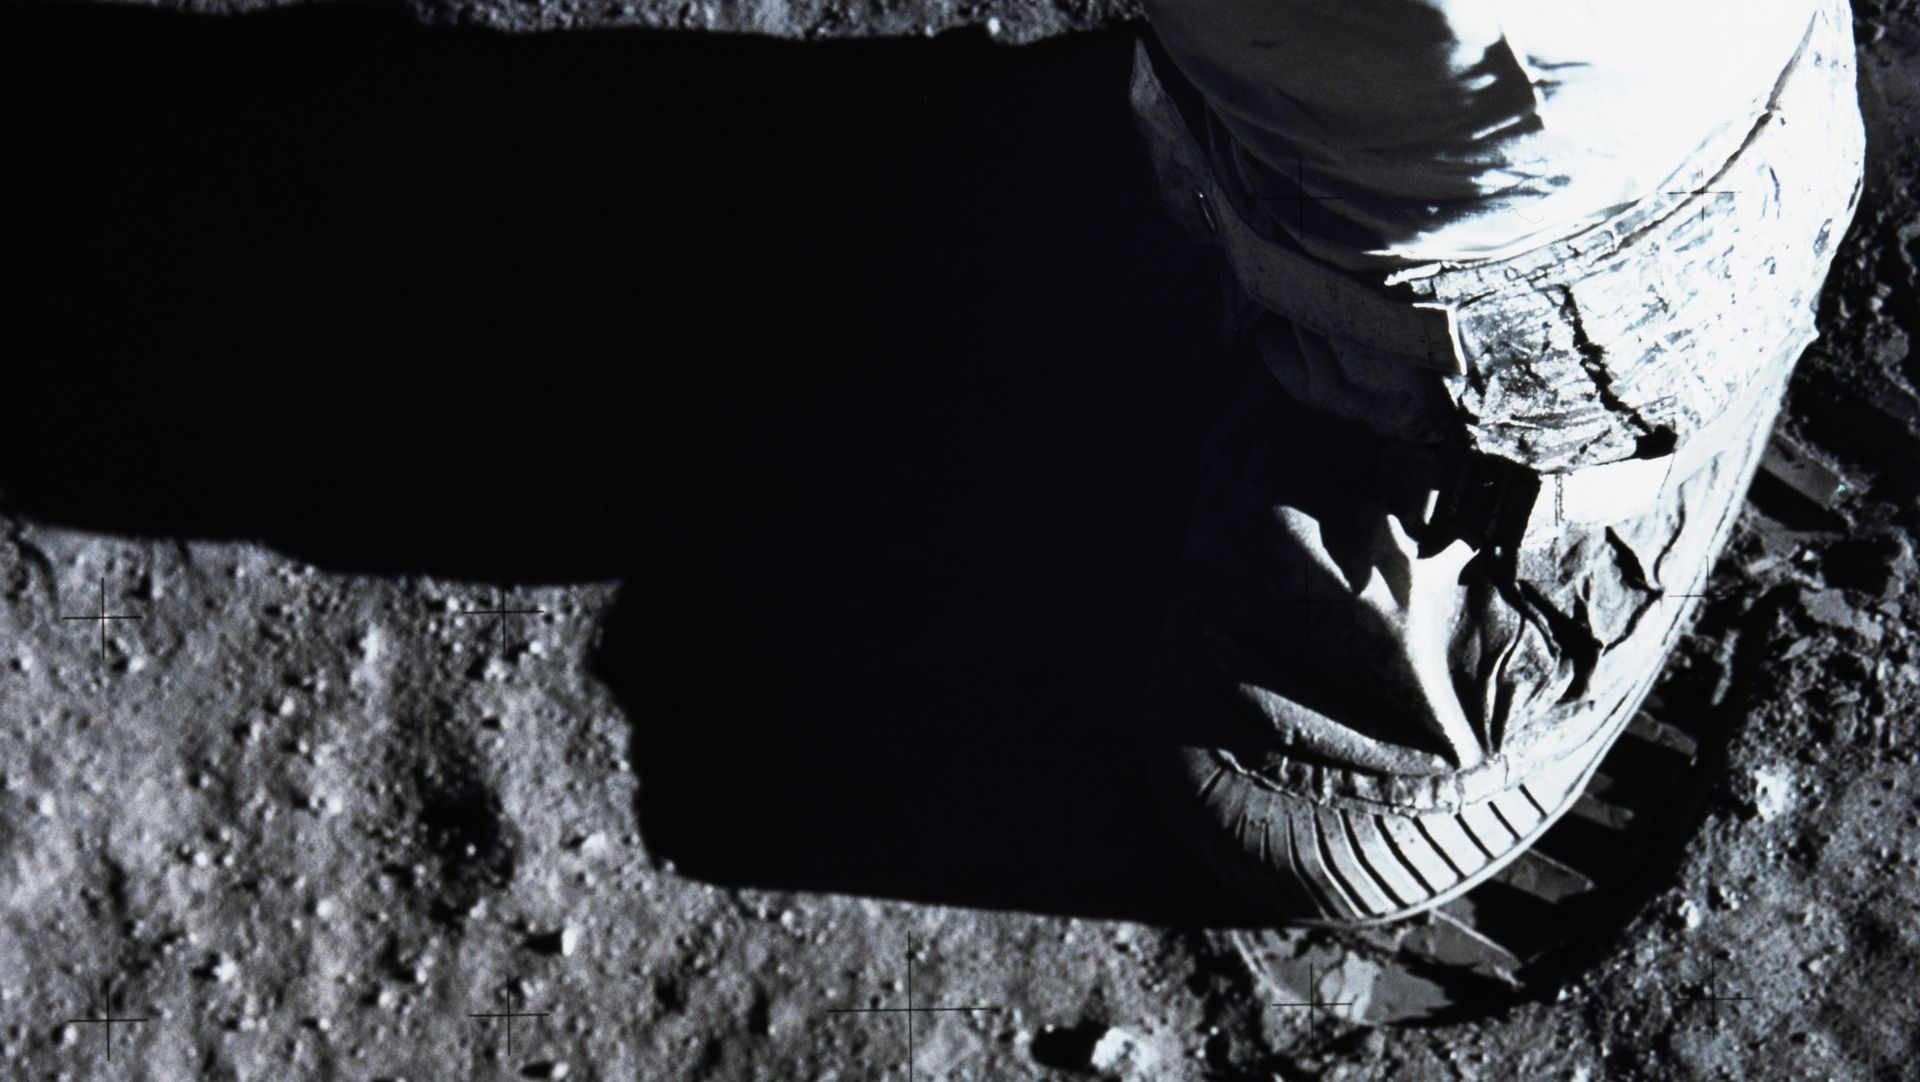 Astronaut's Boot on Moon Surface